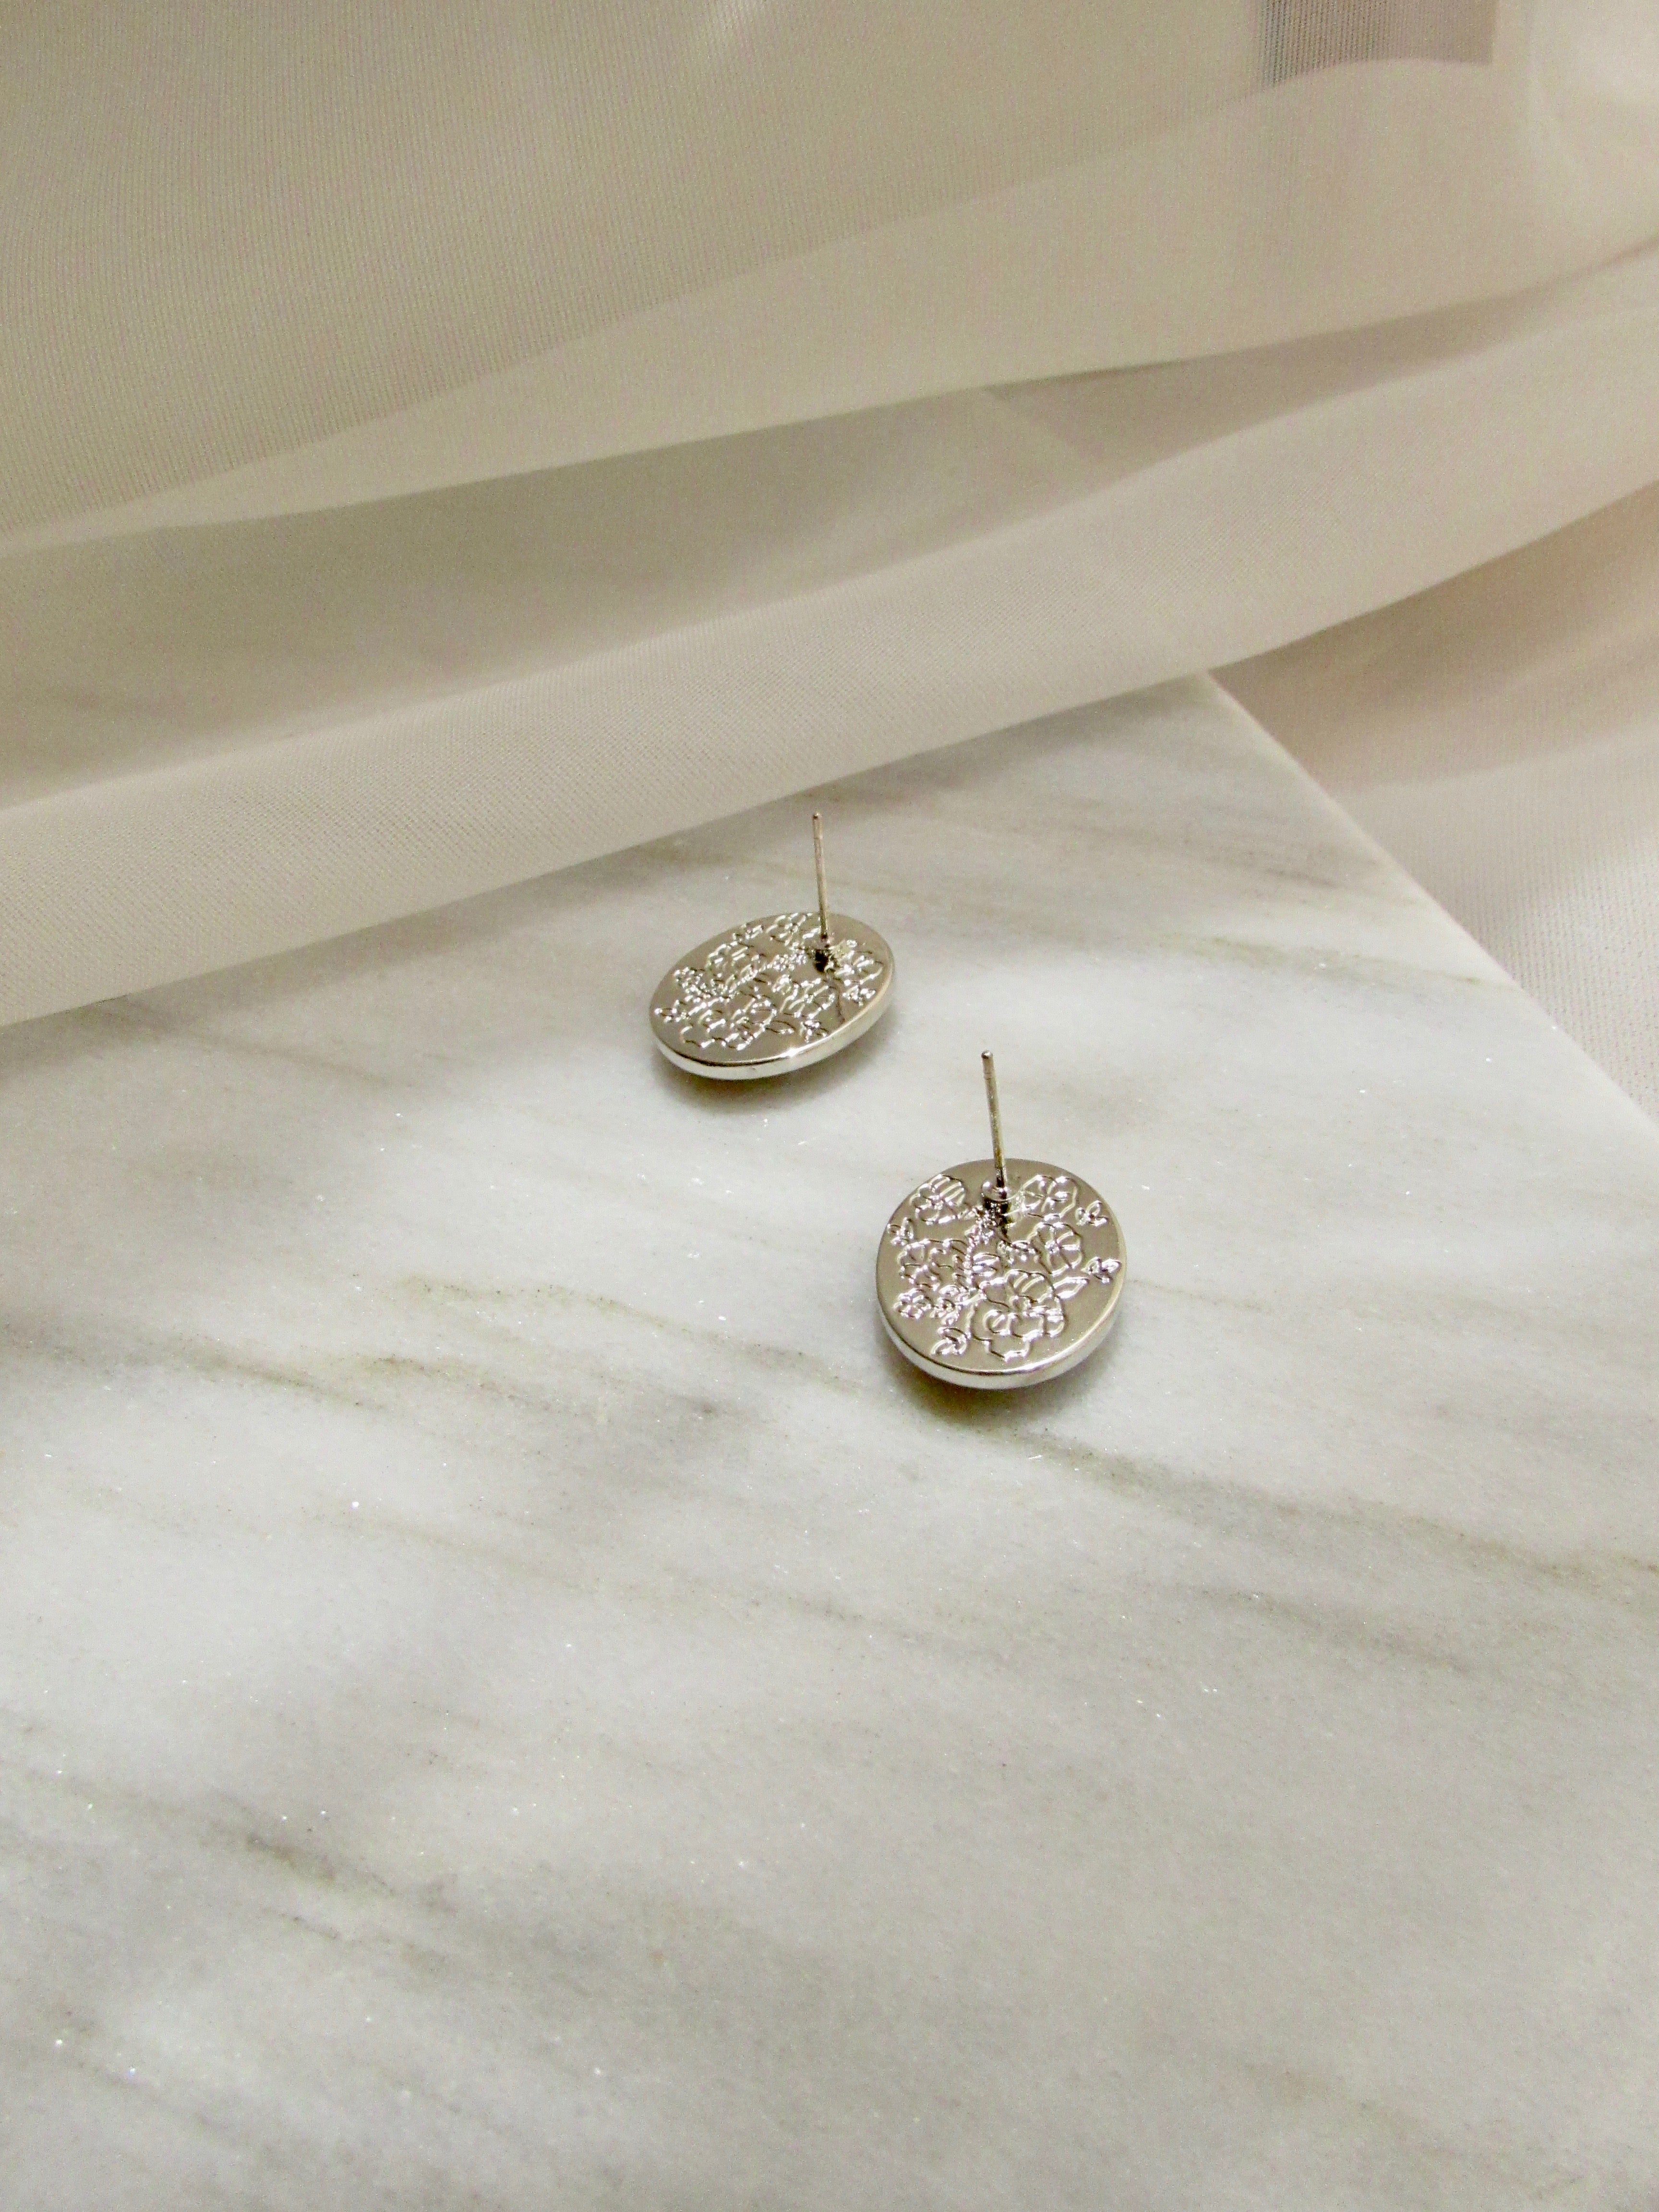 Floral Pearl Oval Black Enamel Earrings in Silver